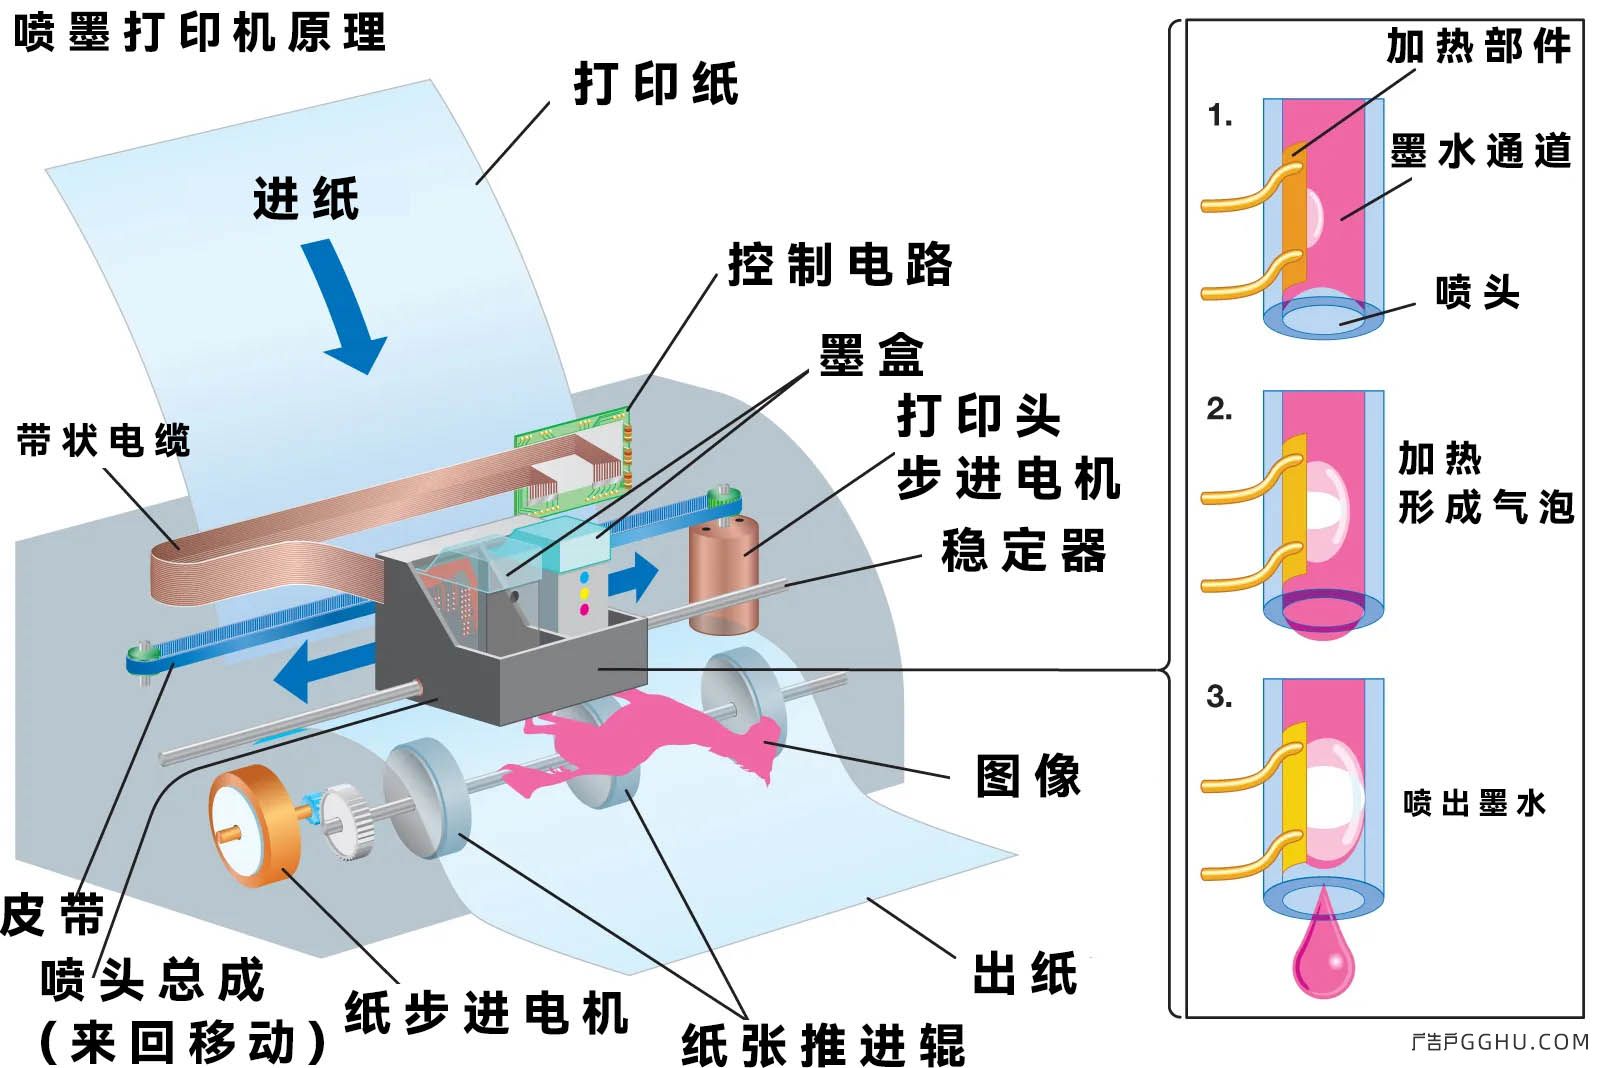 针式打印机内部结构图图片